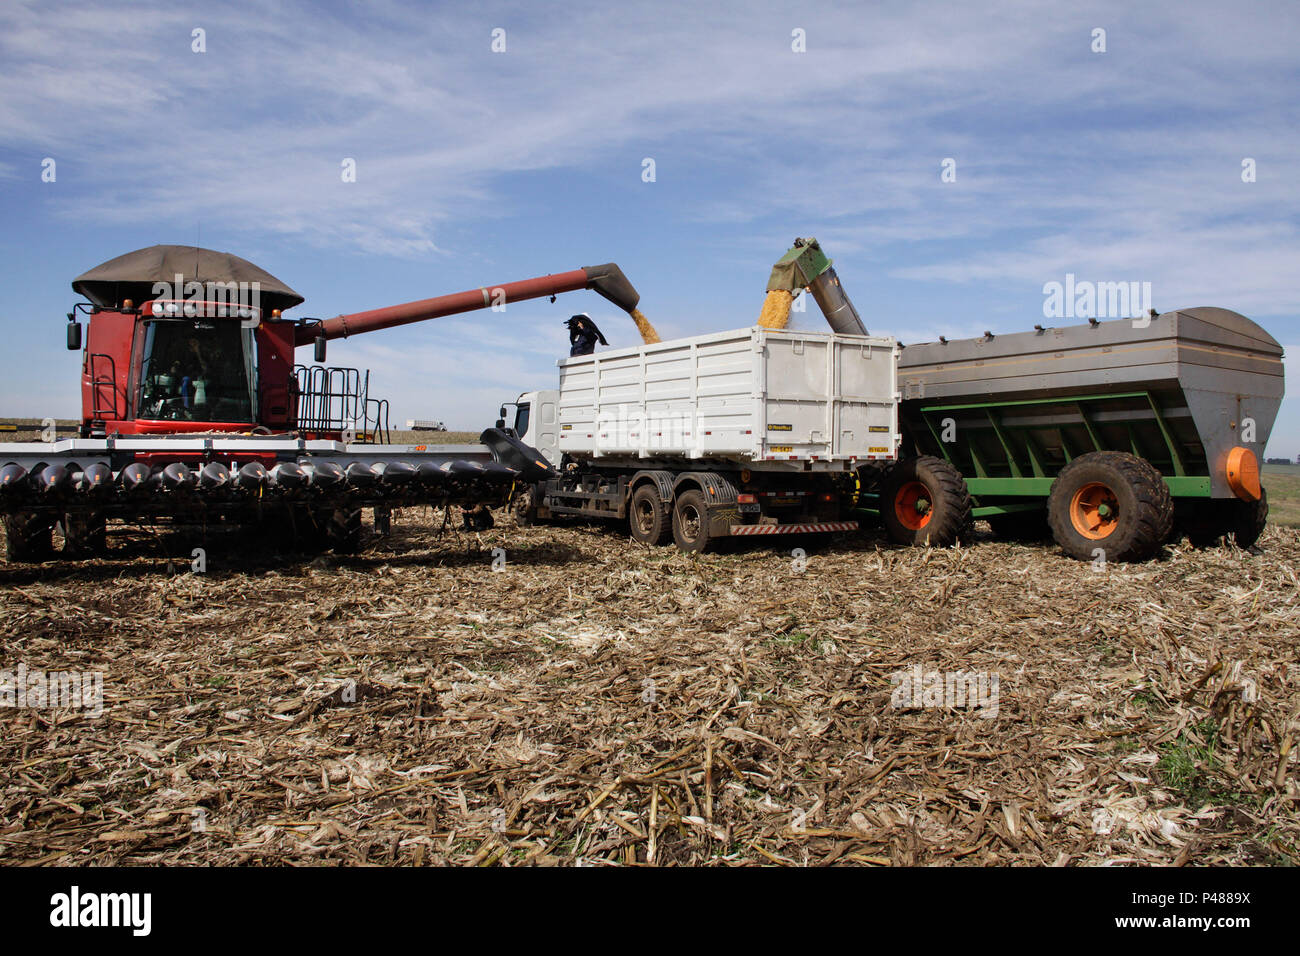 VACARIA, RS - 03/05/14: COLHEITA DE TRIGO - RS. Abastecimento do caminhão de Apoio que lev o trigo do Campo de colheita até os silos, para armazenamento e secagem. (Foto: Vanessa Bohn / Fotoarena) Foto Stock